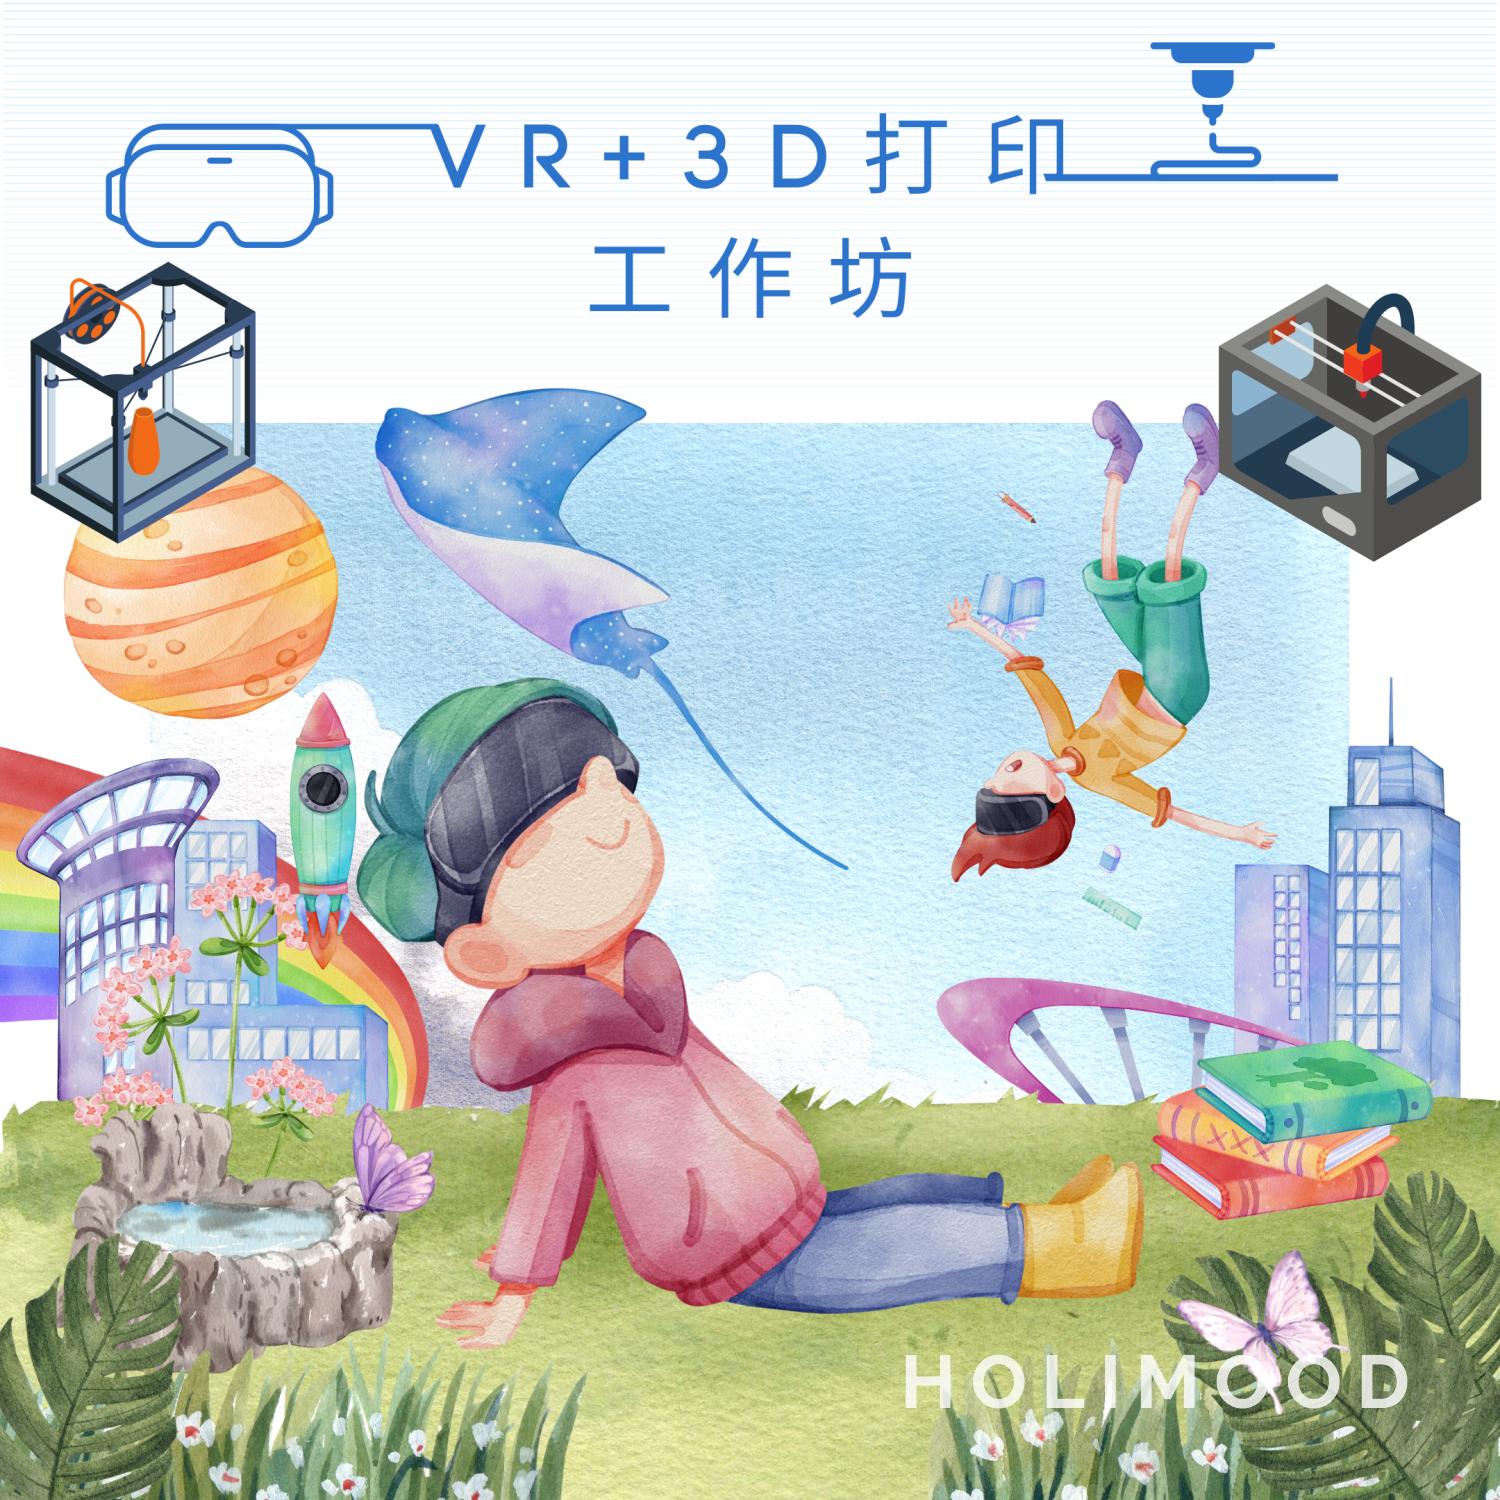 V-Owl Station VR Party VR+3D打印工作坊 2